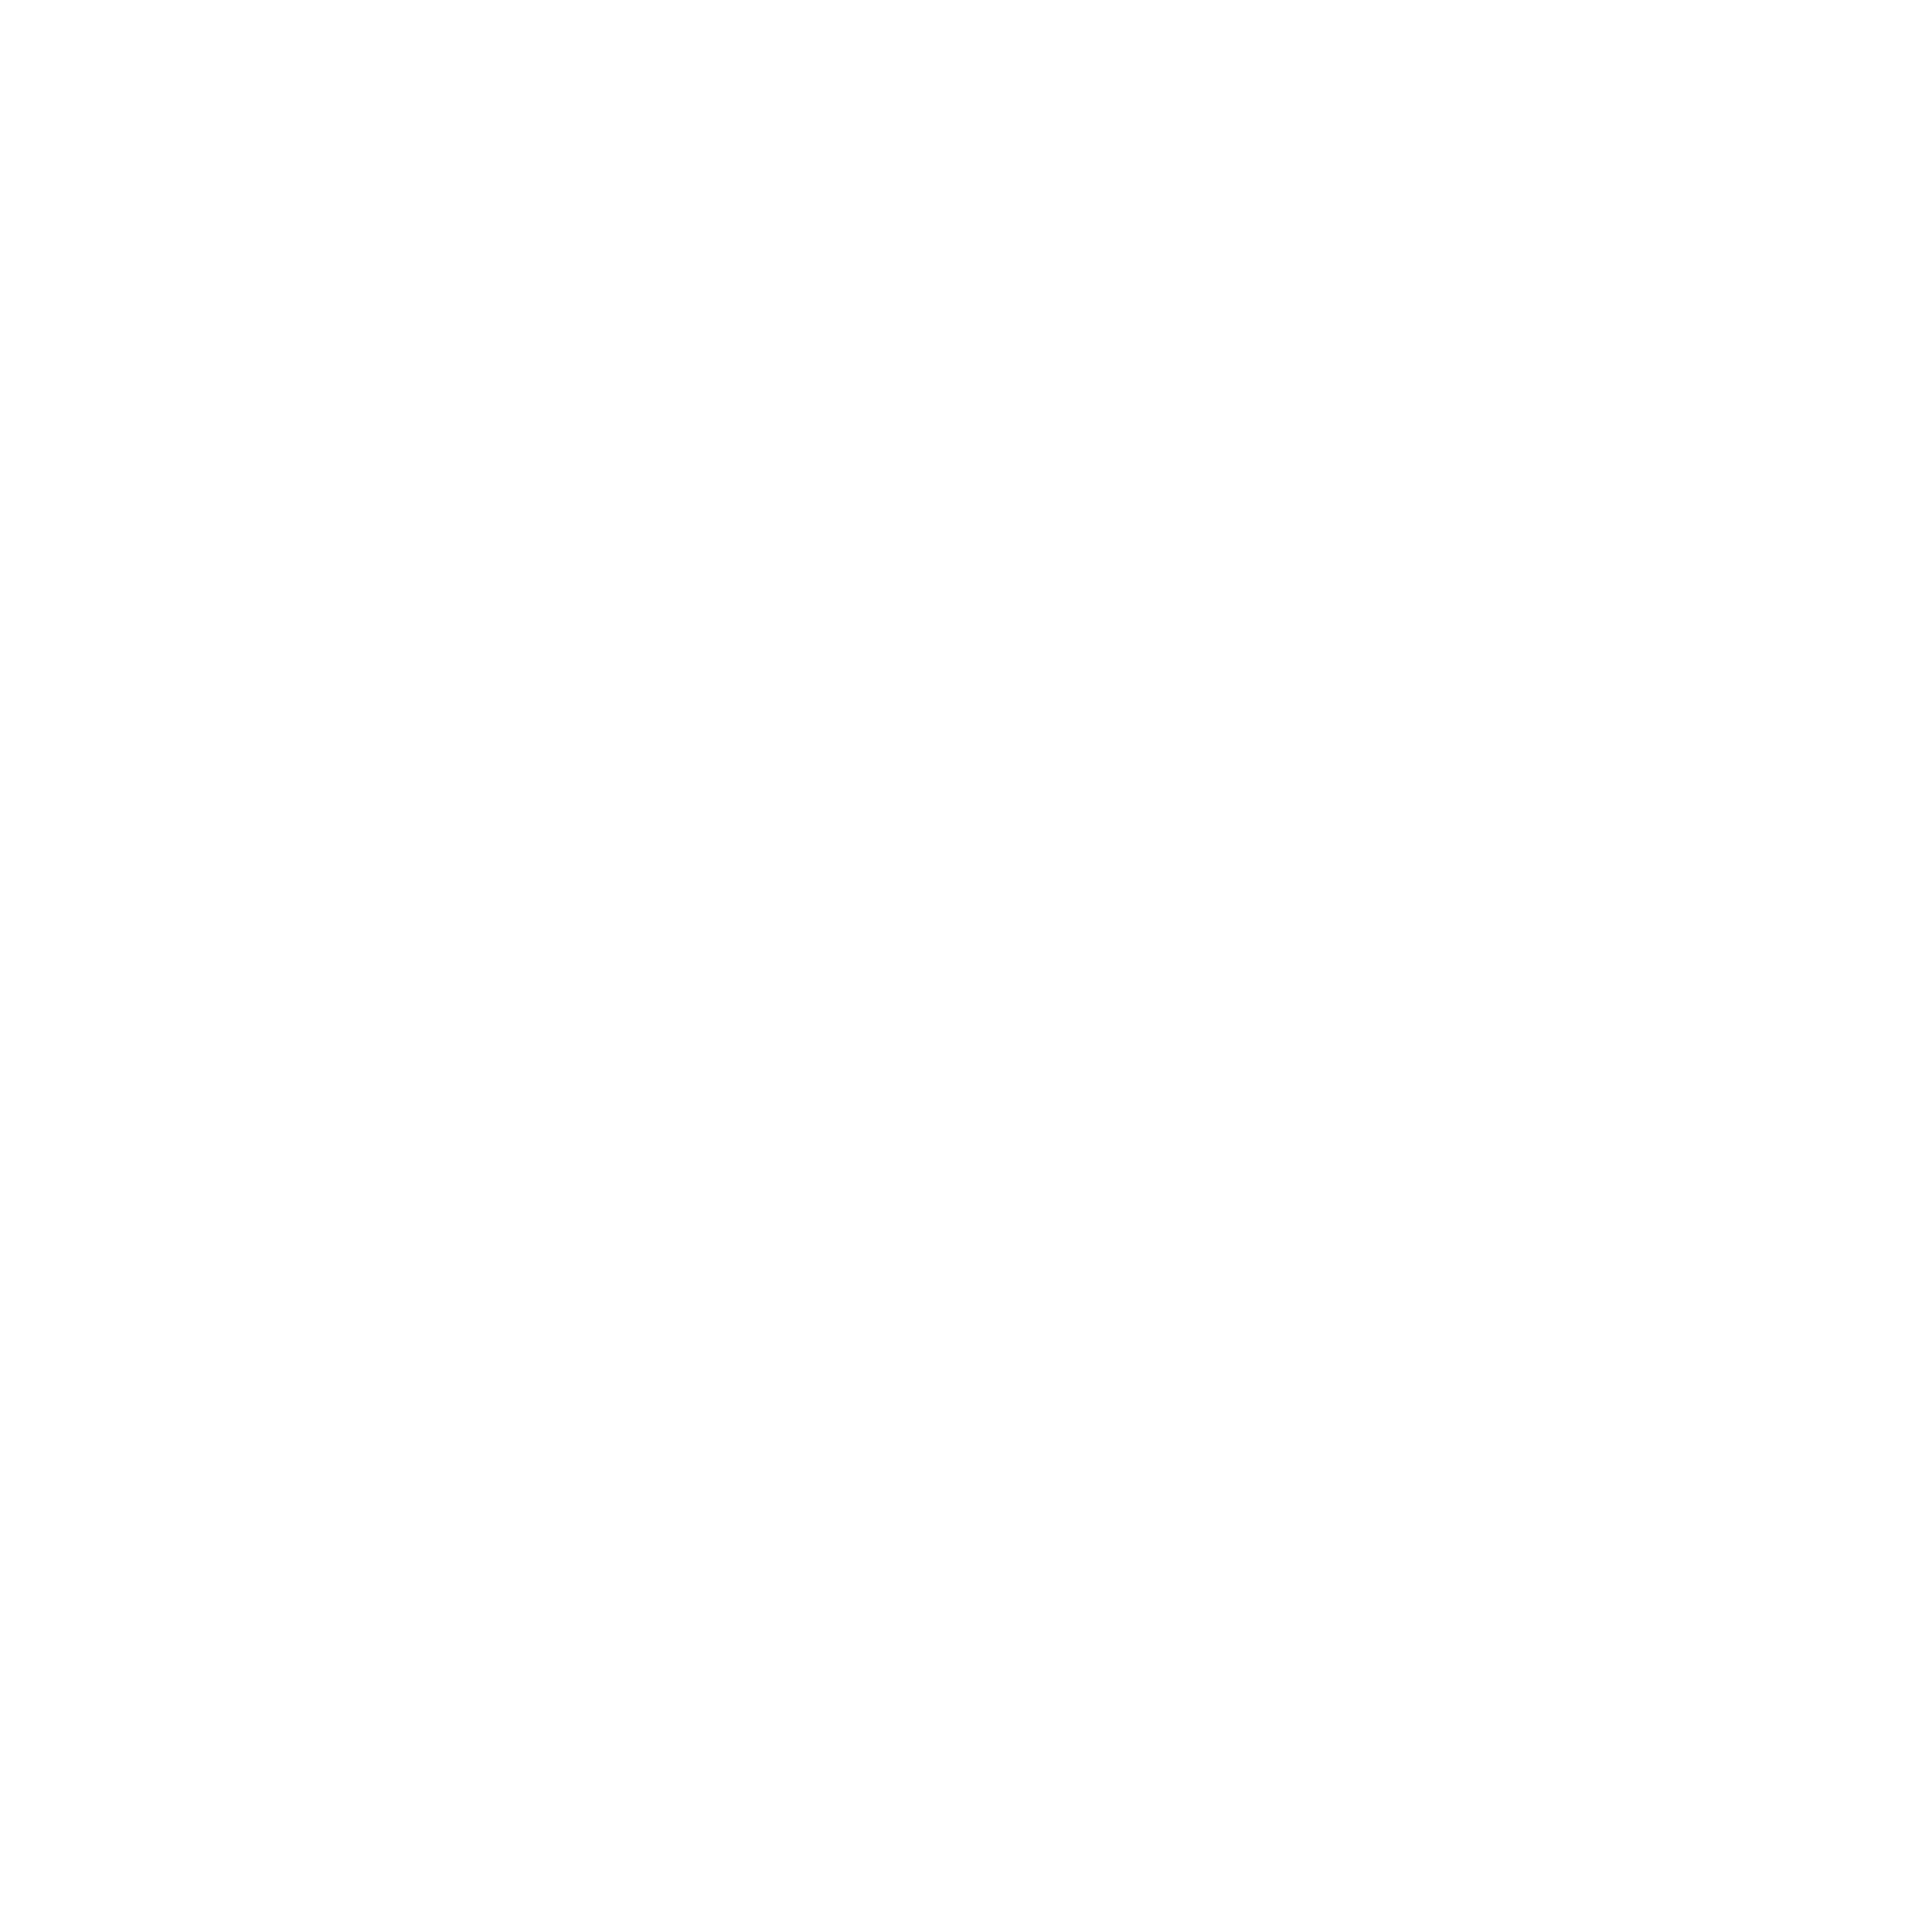 Womens Healing Sanctuary logo
